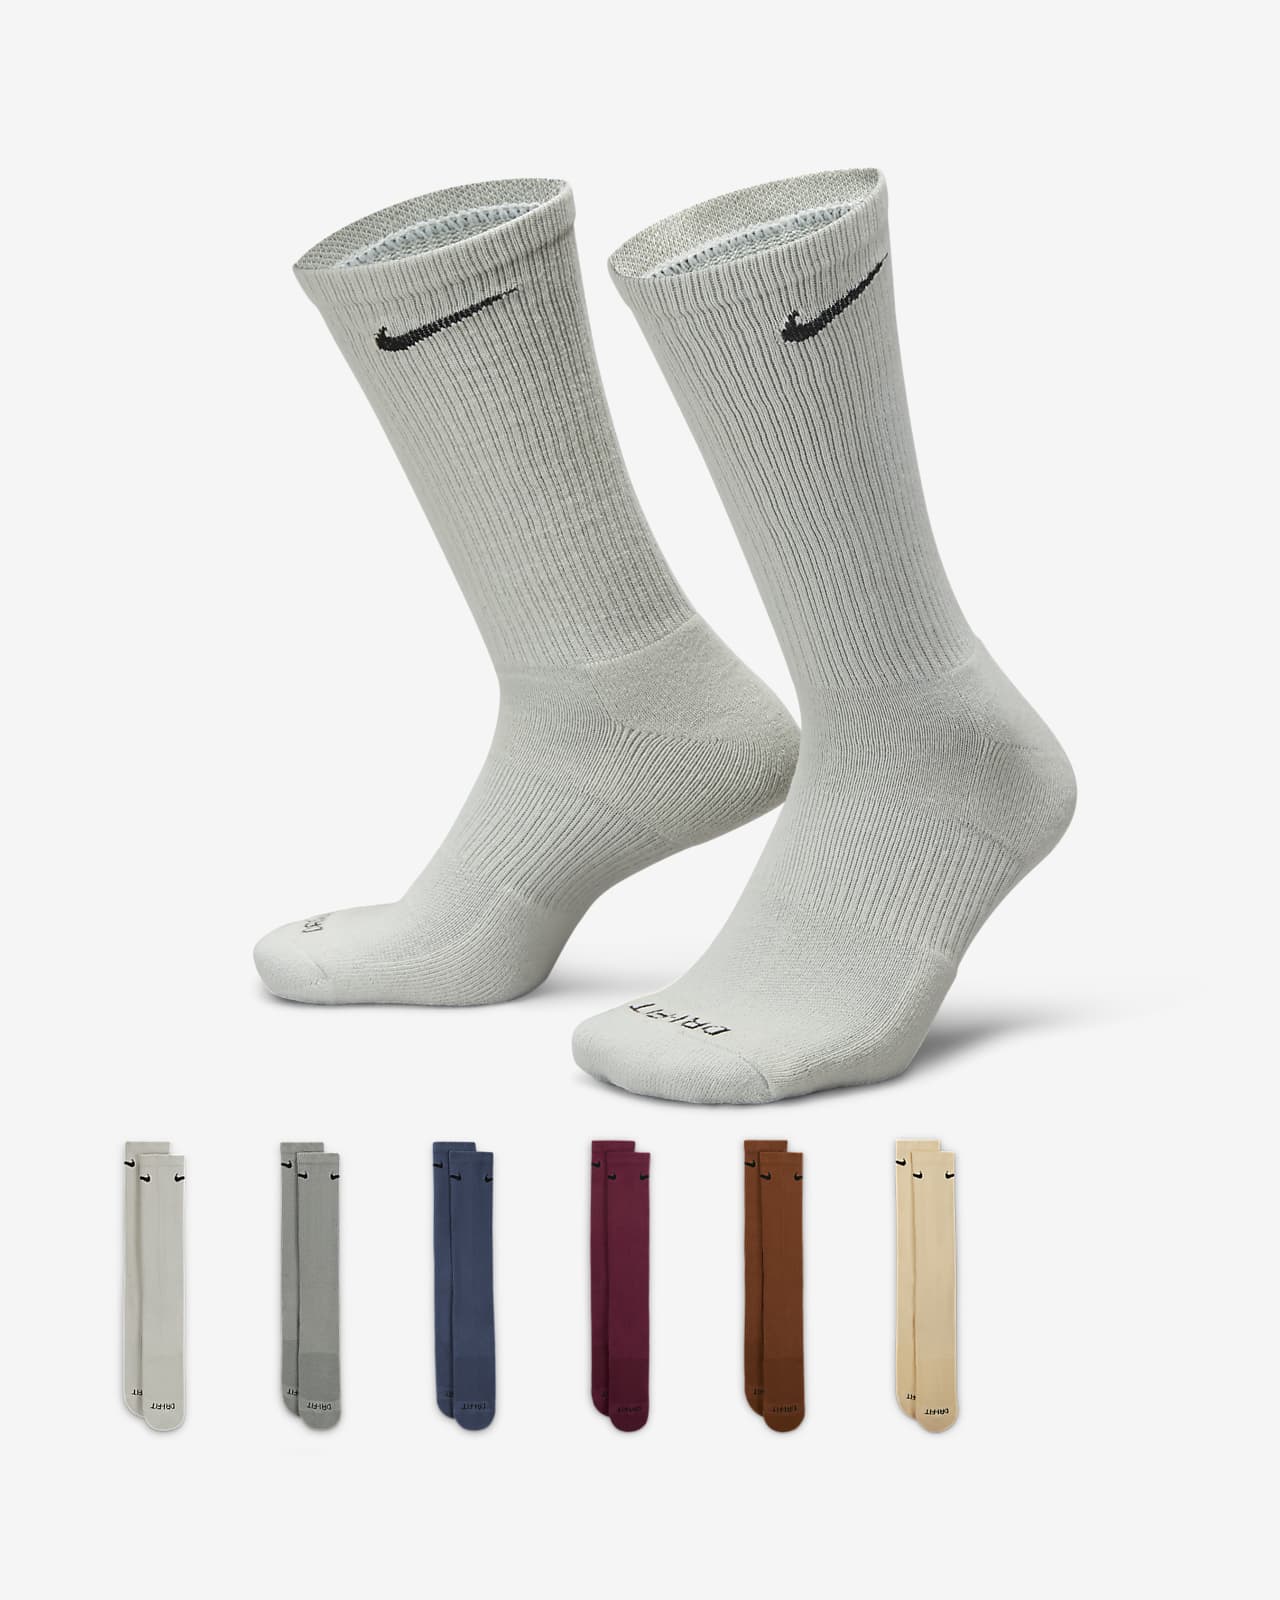 nike mens socks size guide